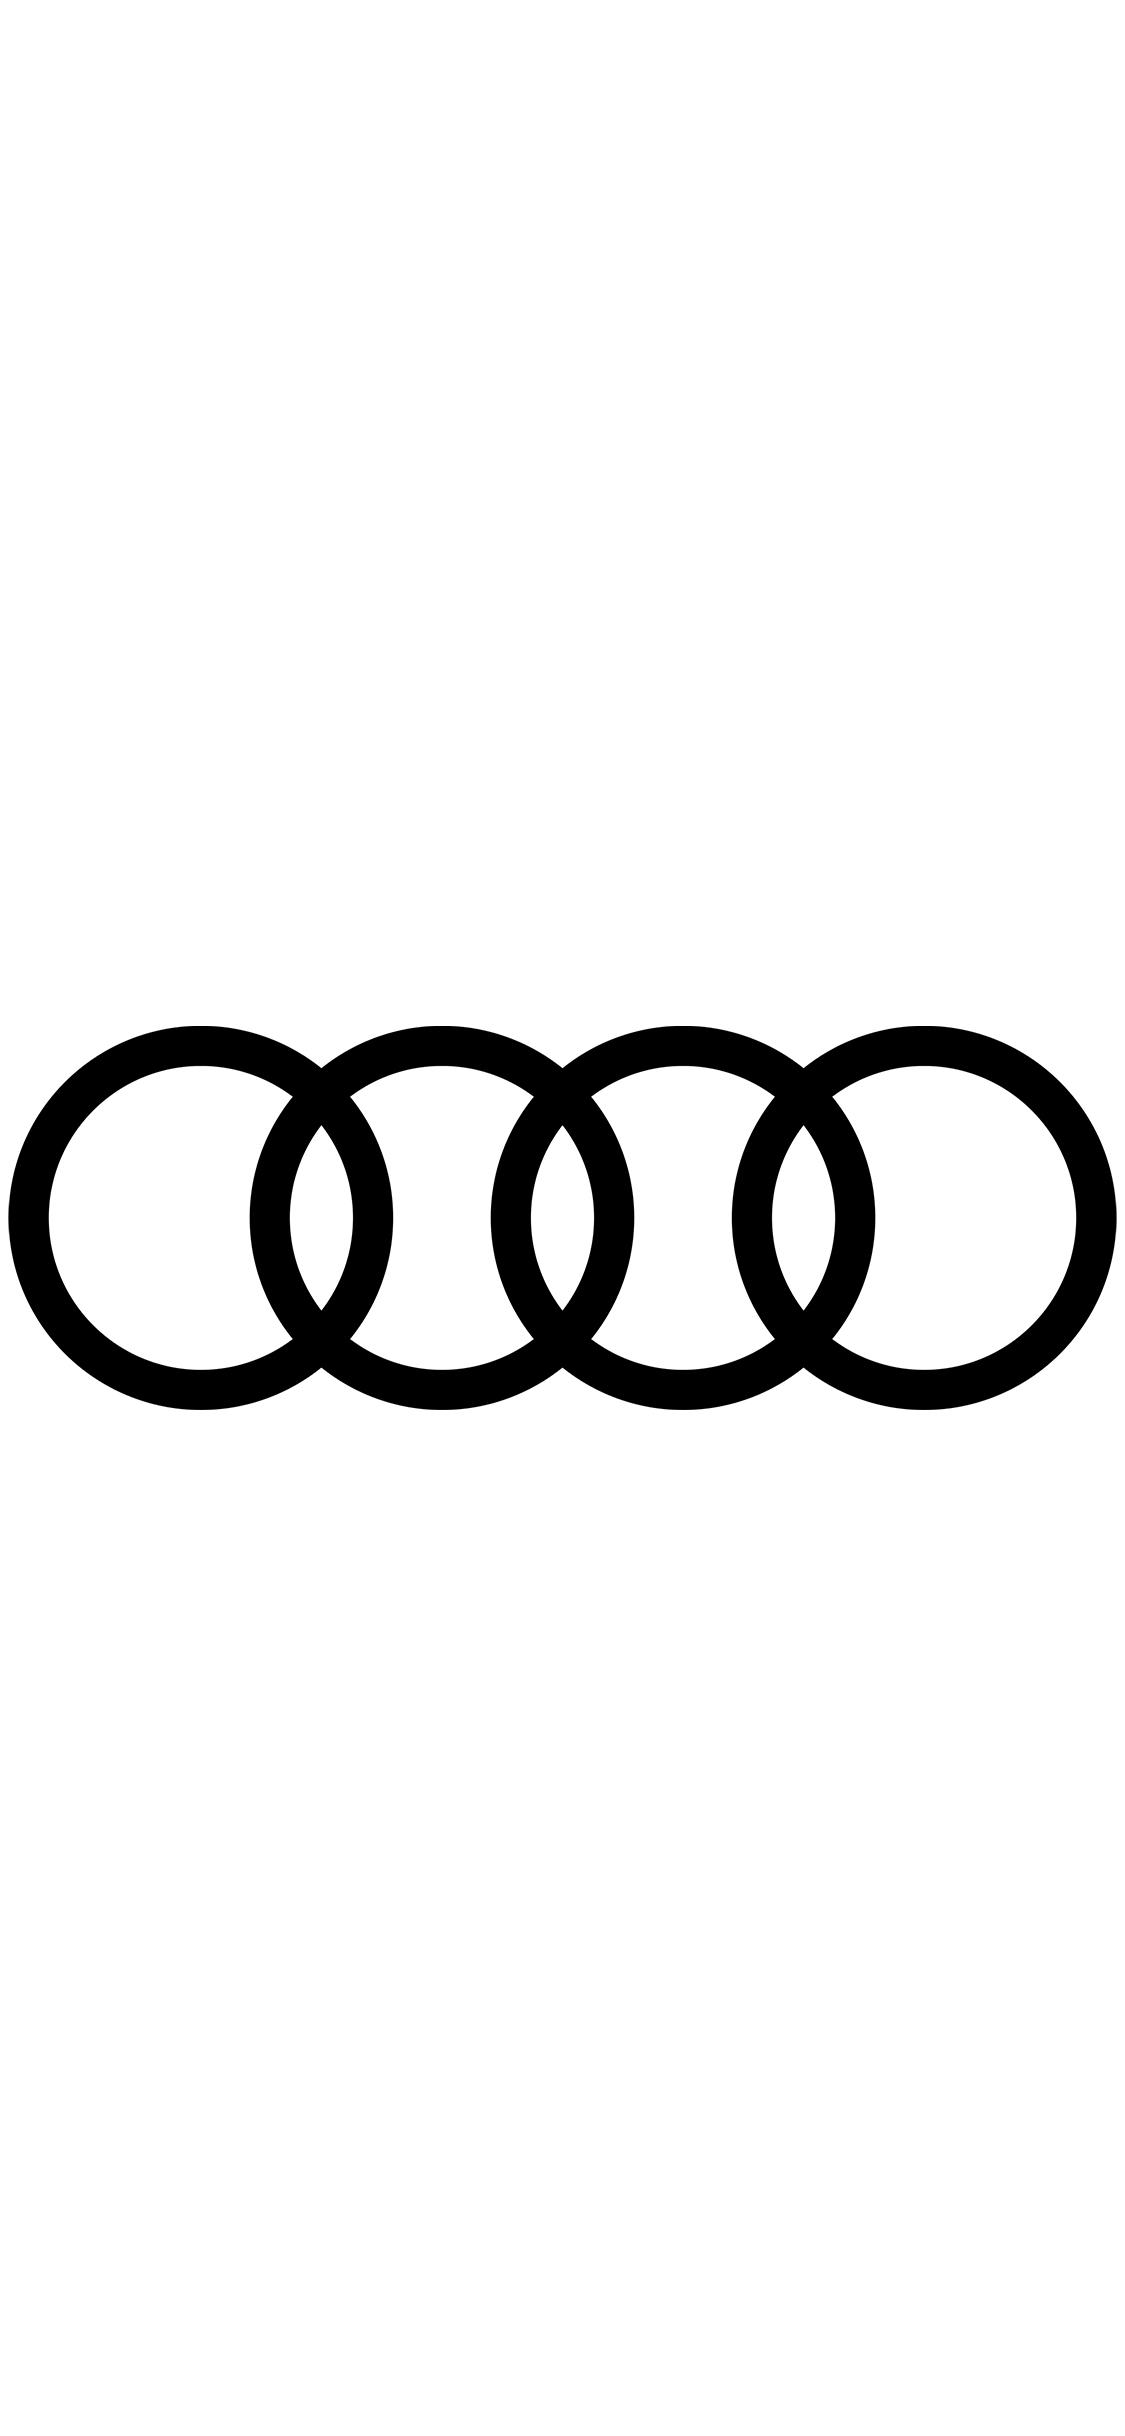 Audi Logo Phone Wallpapers Wallpaper Cave